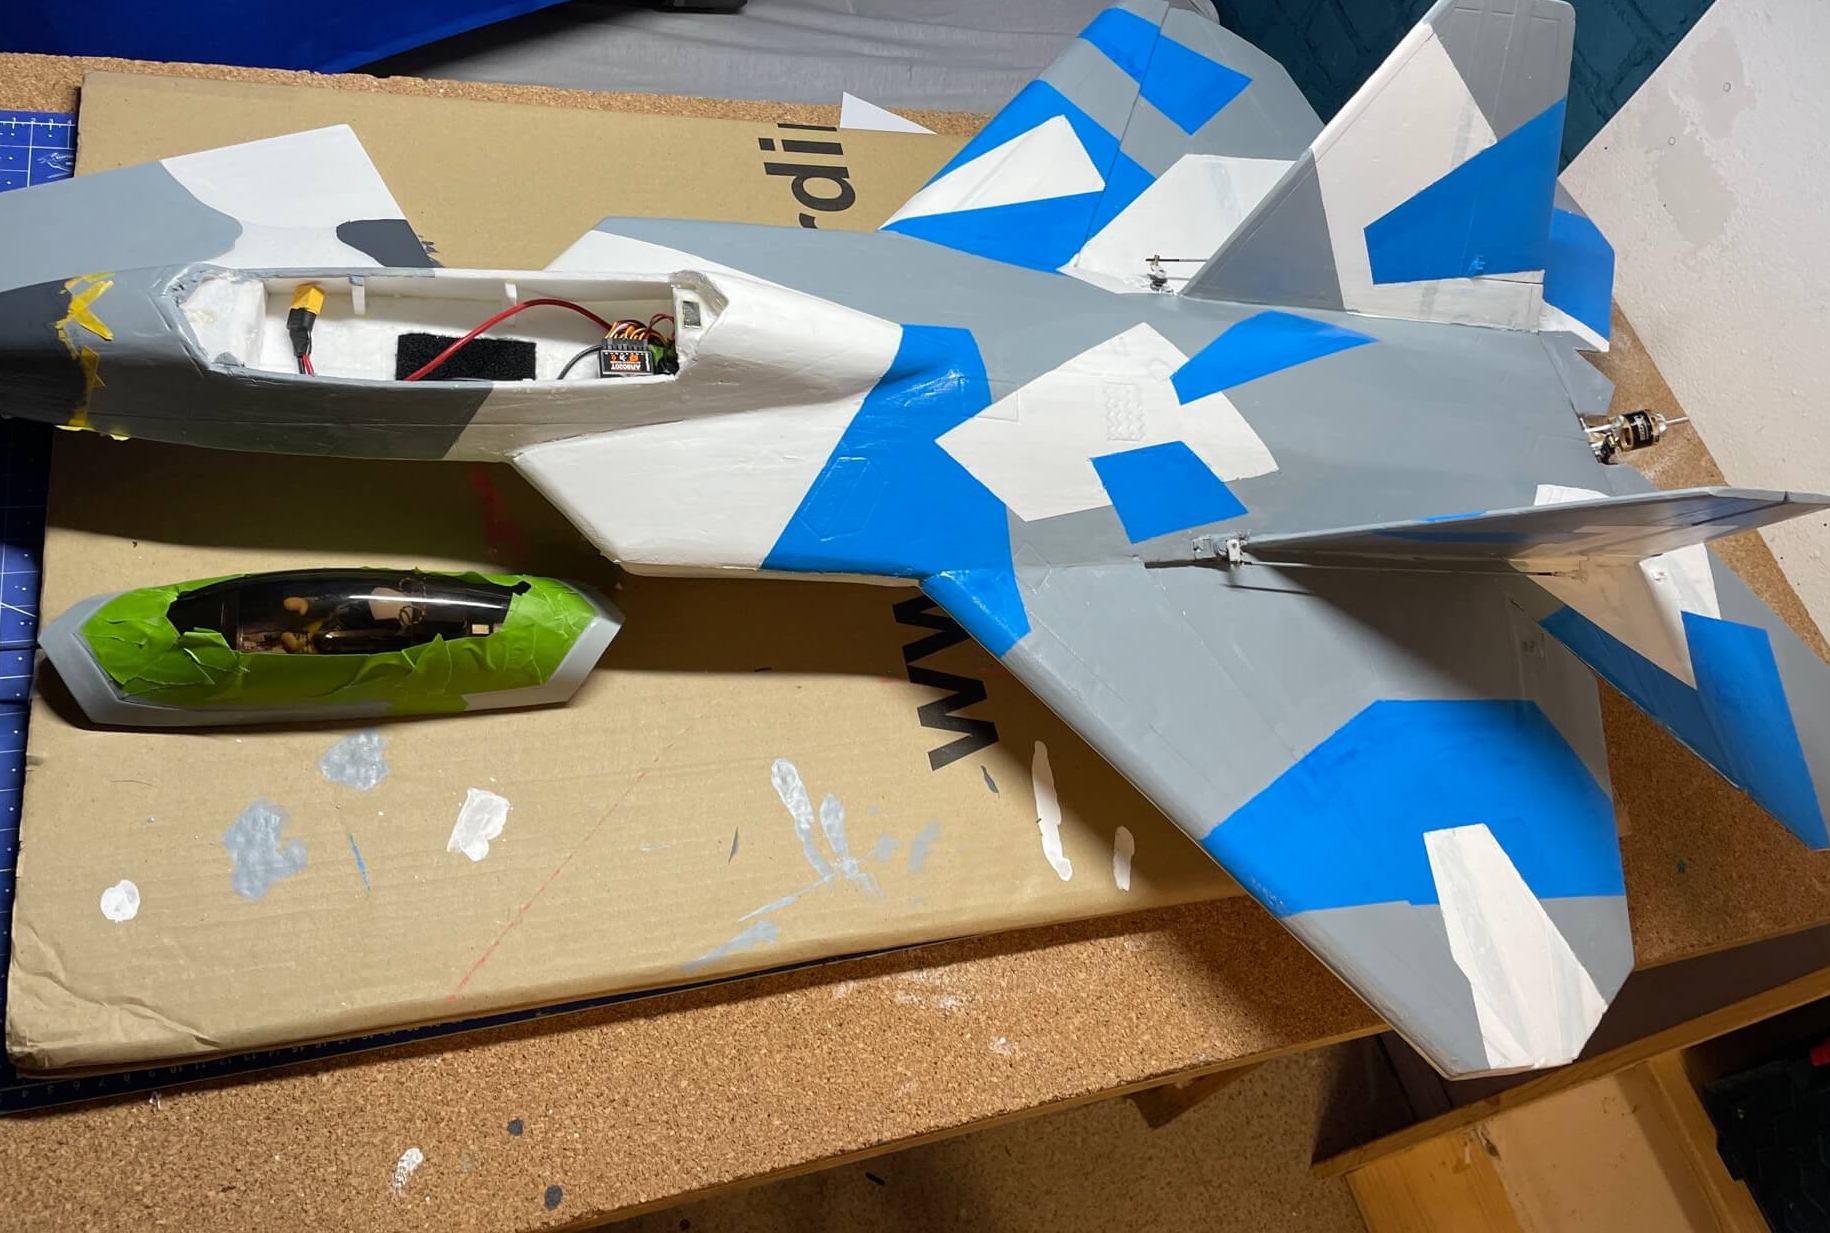 F-22 Raptor fast fertig in blau-grau-weiß lackiert